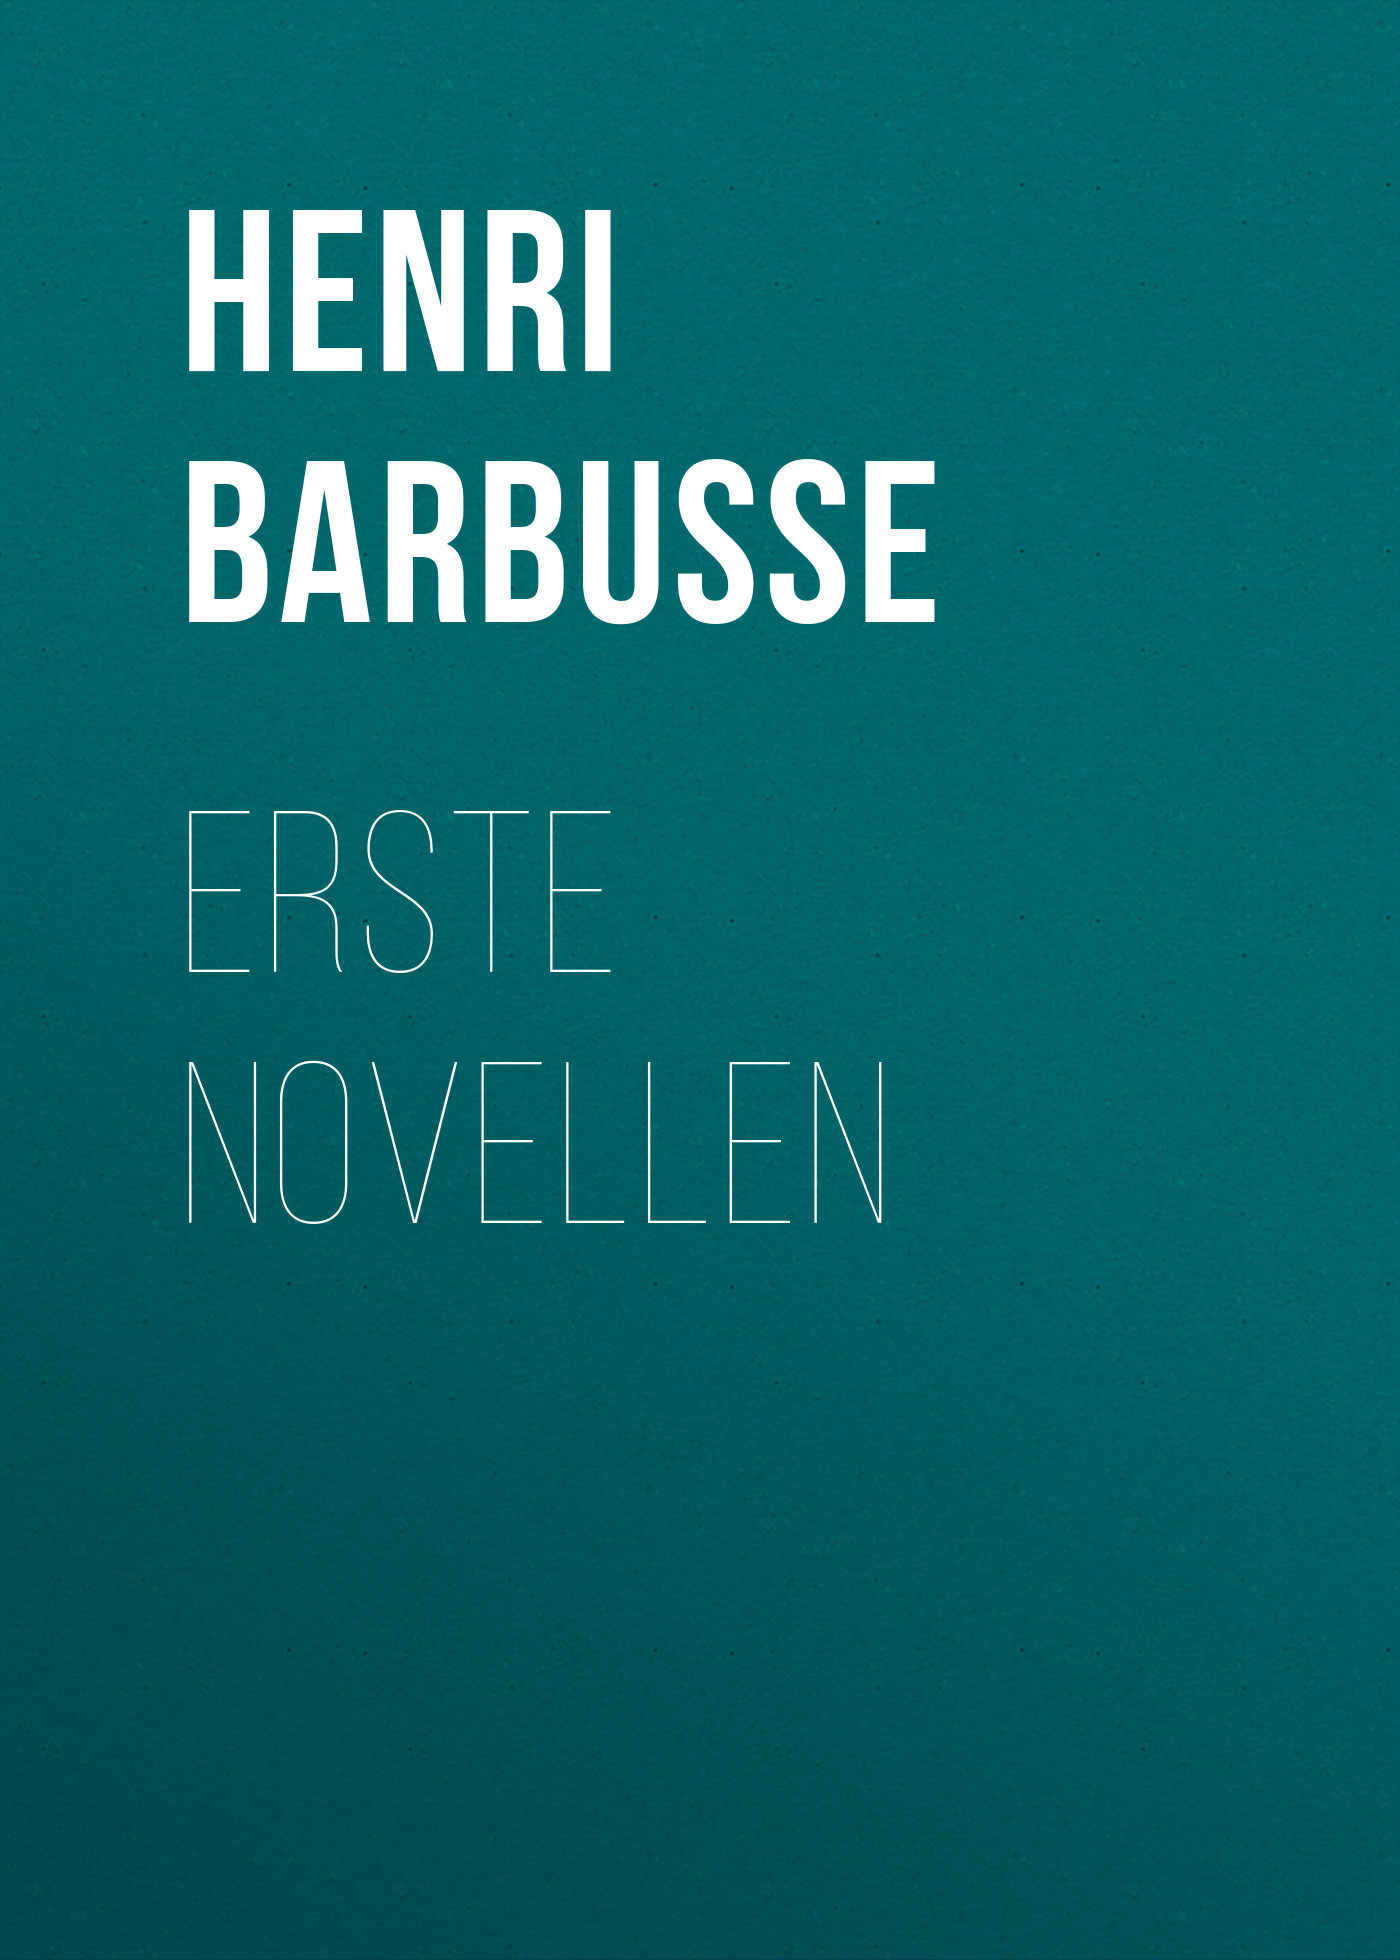 Книга Erste Novellen из серии , созданная Henri Barbusse, может относится к жанру Зарубежная классика. Стоимость электронной книги Erste Novellen с идентификатором 48633588 составляет 0 руб.